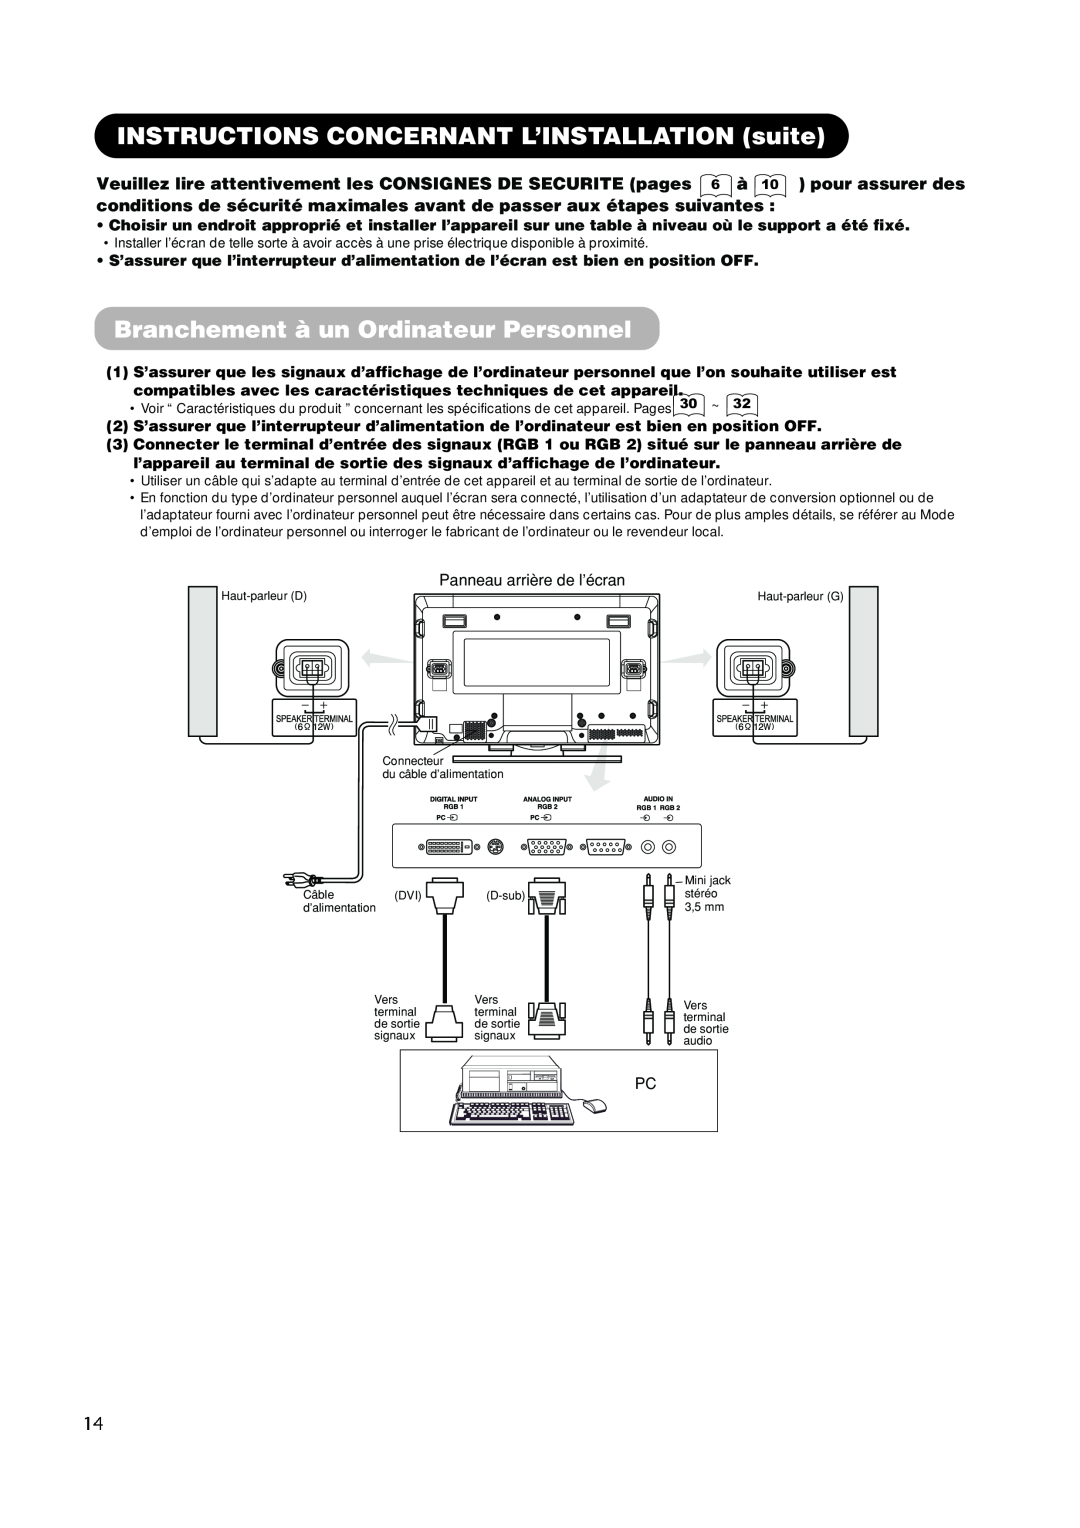 Hitachi PW1A user manual INSTRUCTIONS CONCERNANT L’INSTALLATION suite, Branchement à un Ordinateur Personnel, de sortie 